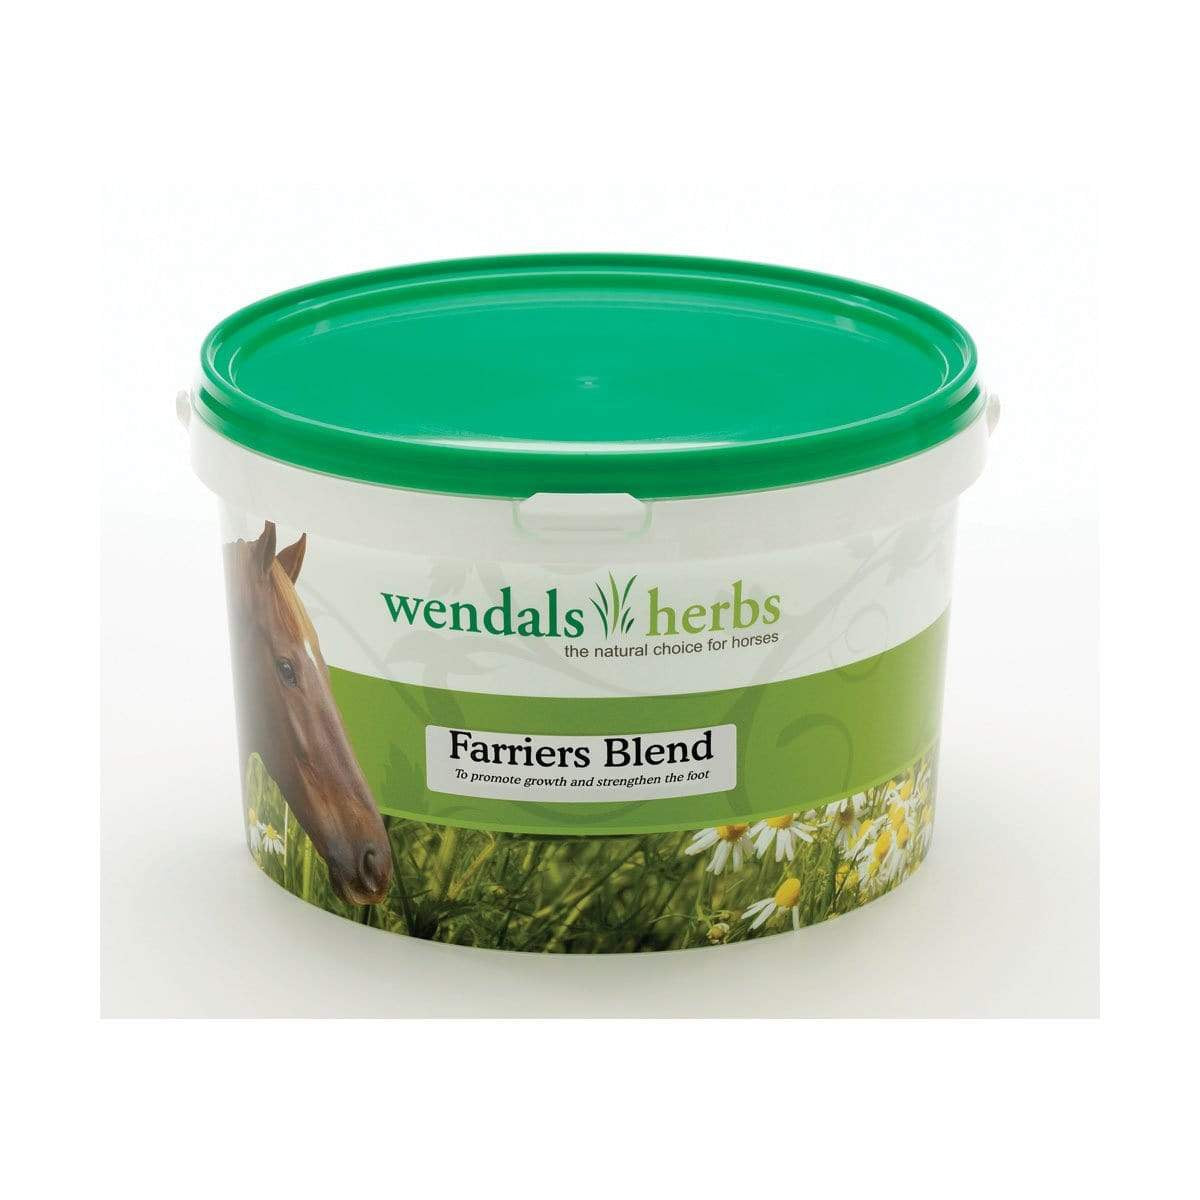 Wendals Herbs Farriers Blend